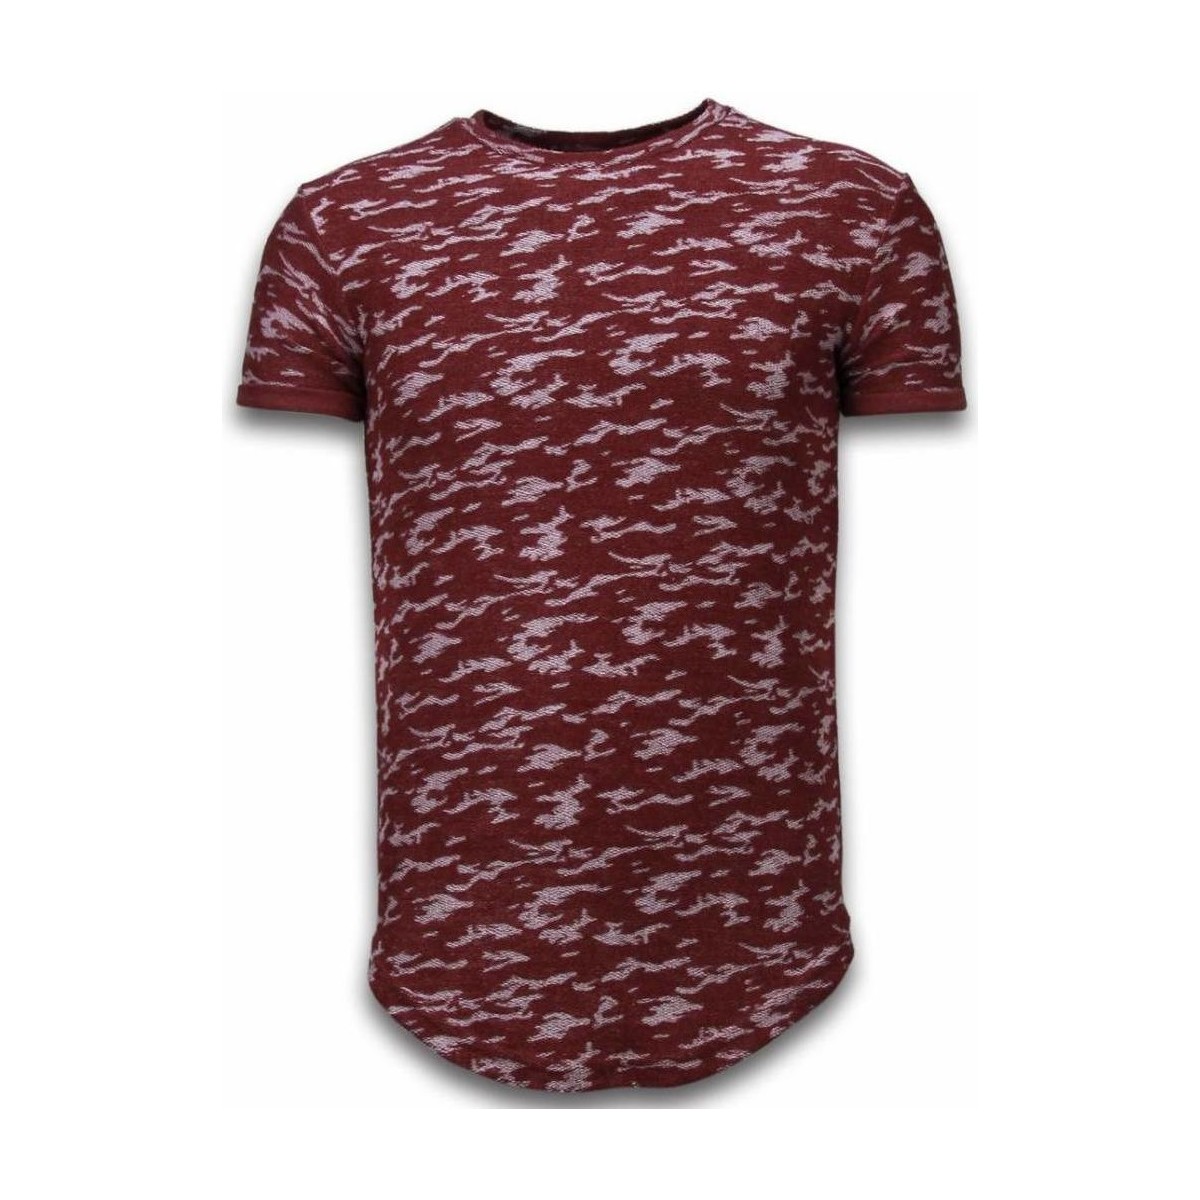 tekstylia Męskie T-shirty z krótkim rękawem Justing 46481951 Czerwony